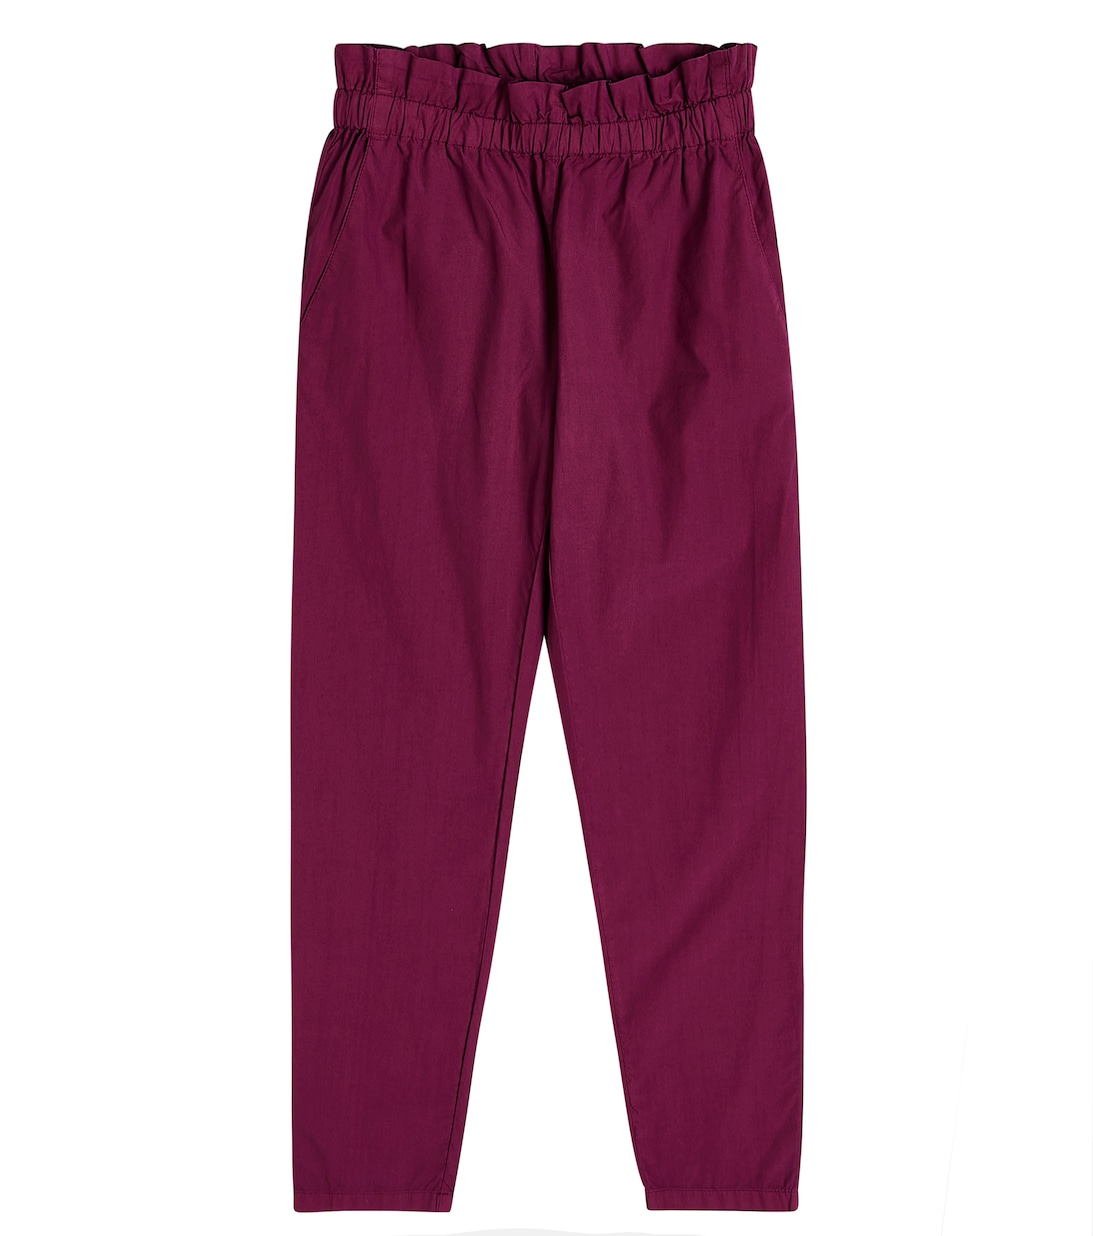 Хлопковые брюки Bonpoint, фиолетовый